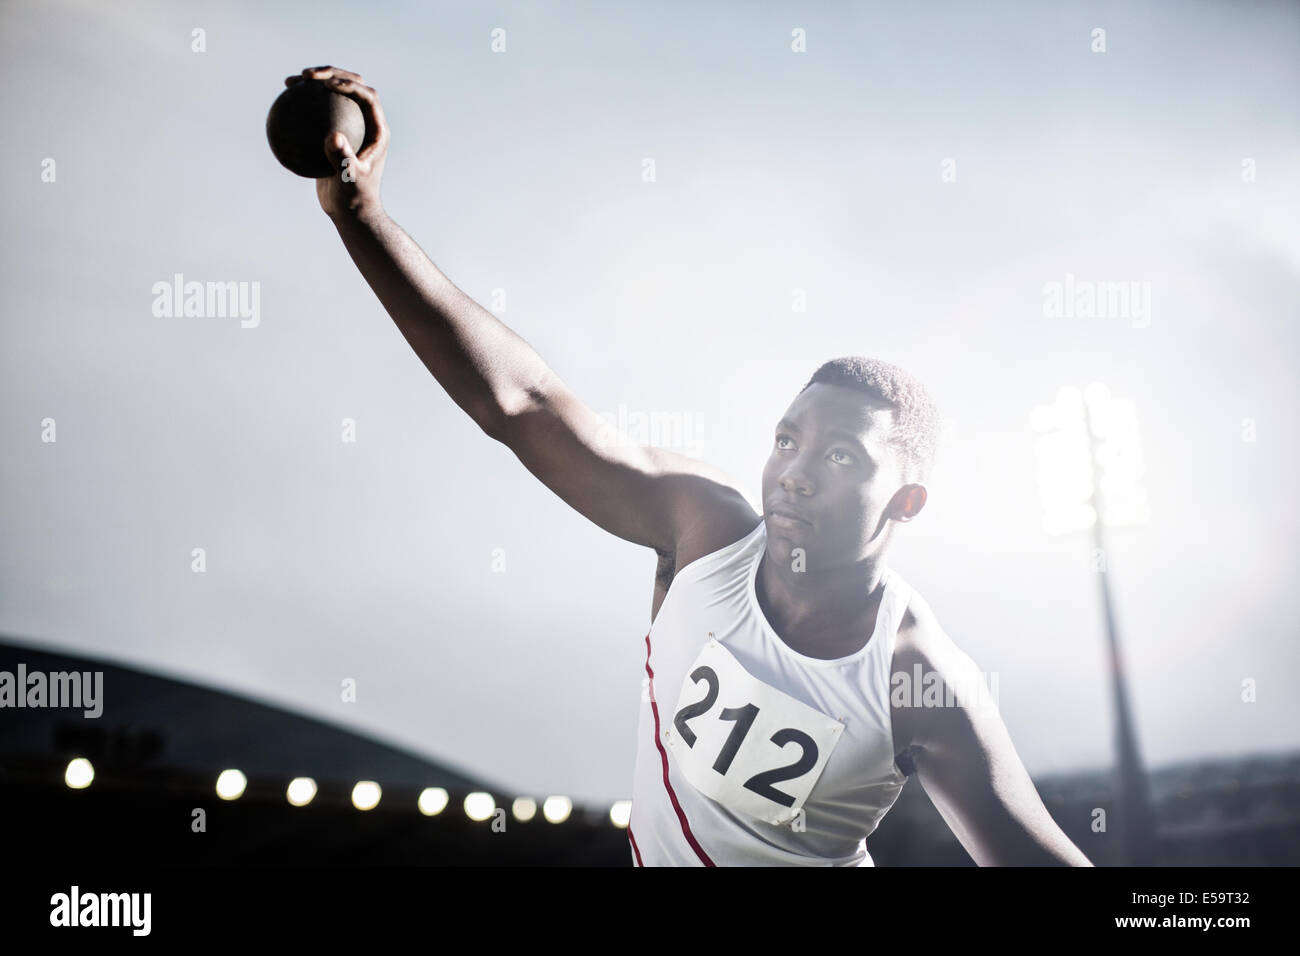 Athlétisme lancer lancer du poids Banque D'Images